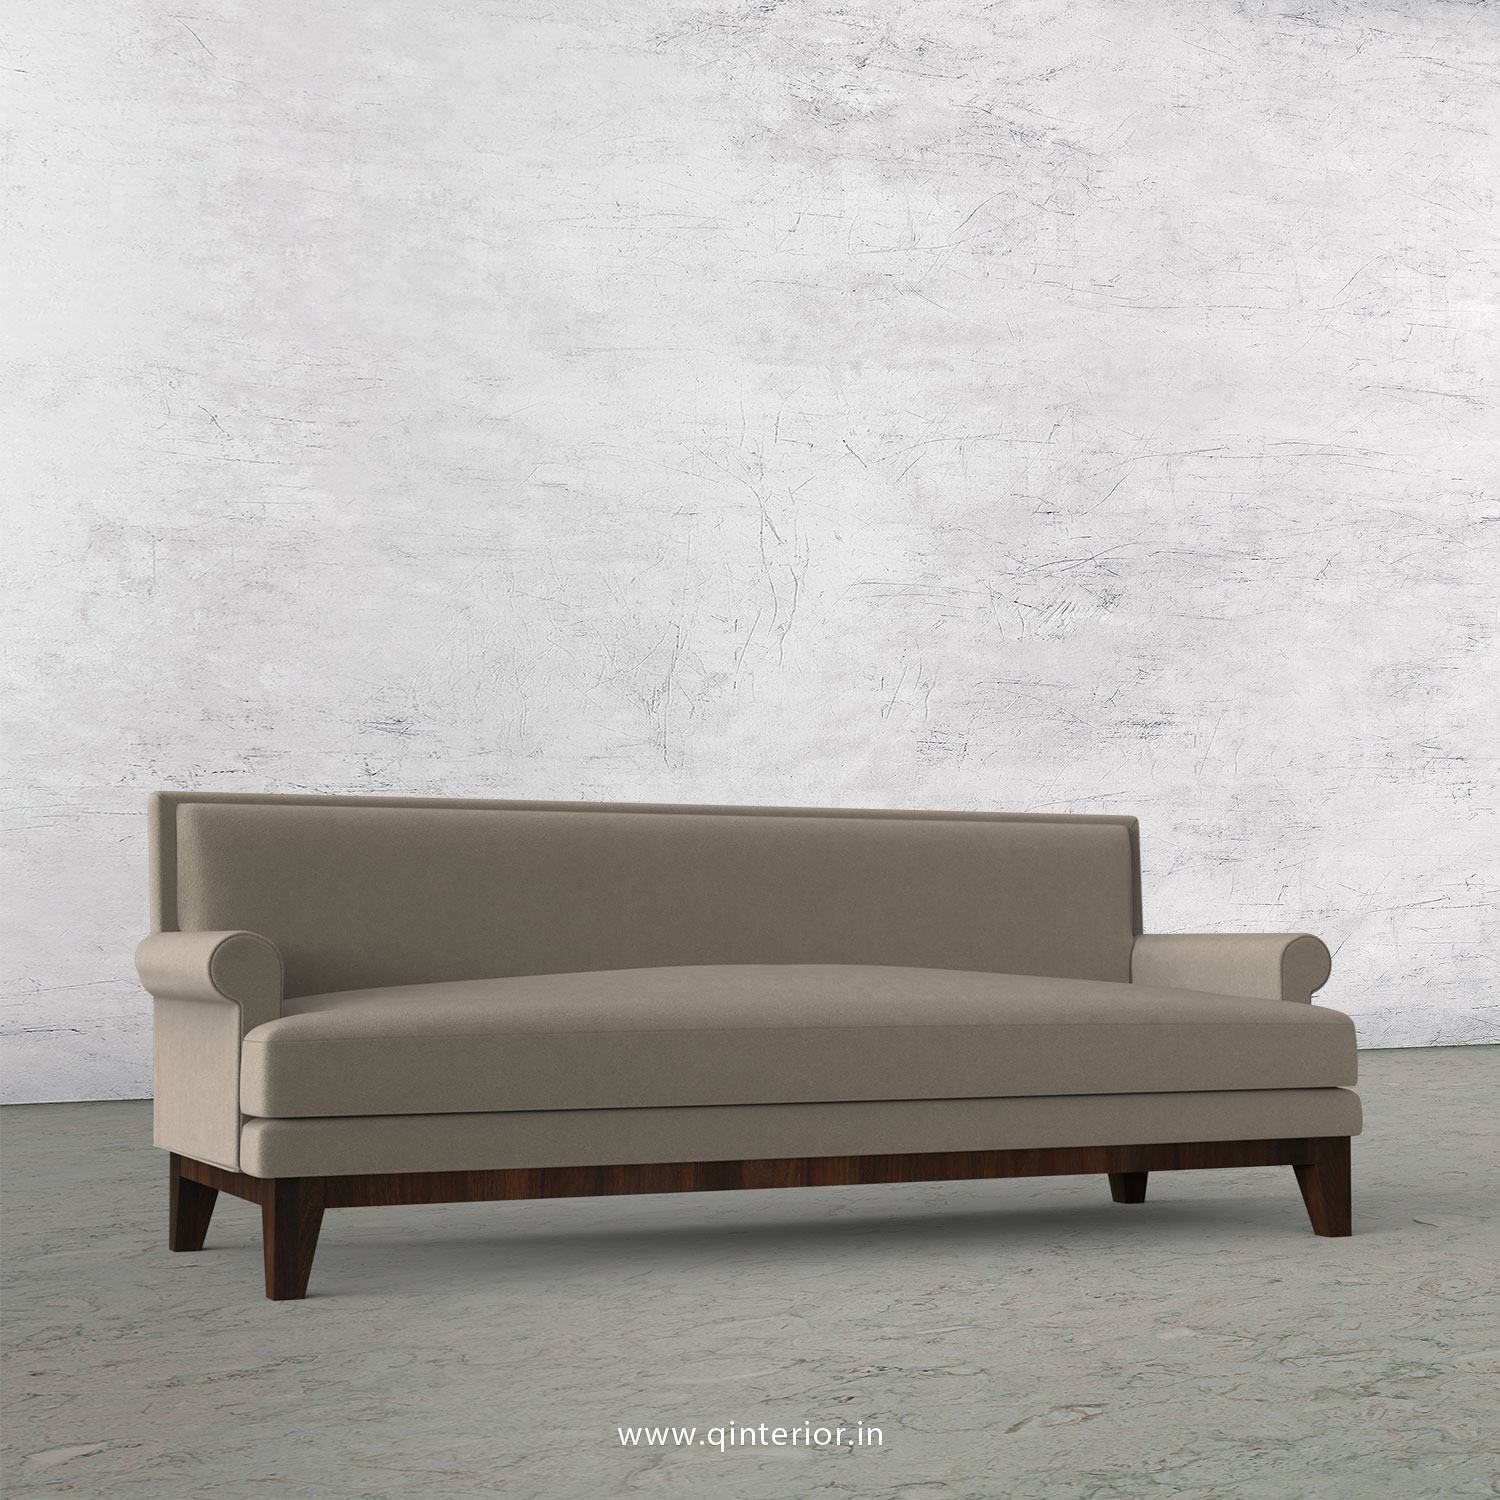 Aviana 3 Seater Sofa in Velvet Fabric - SFA001 VL12